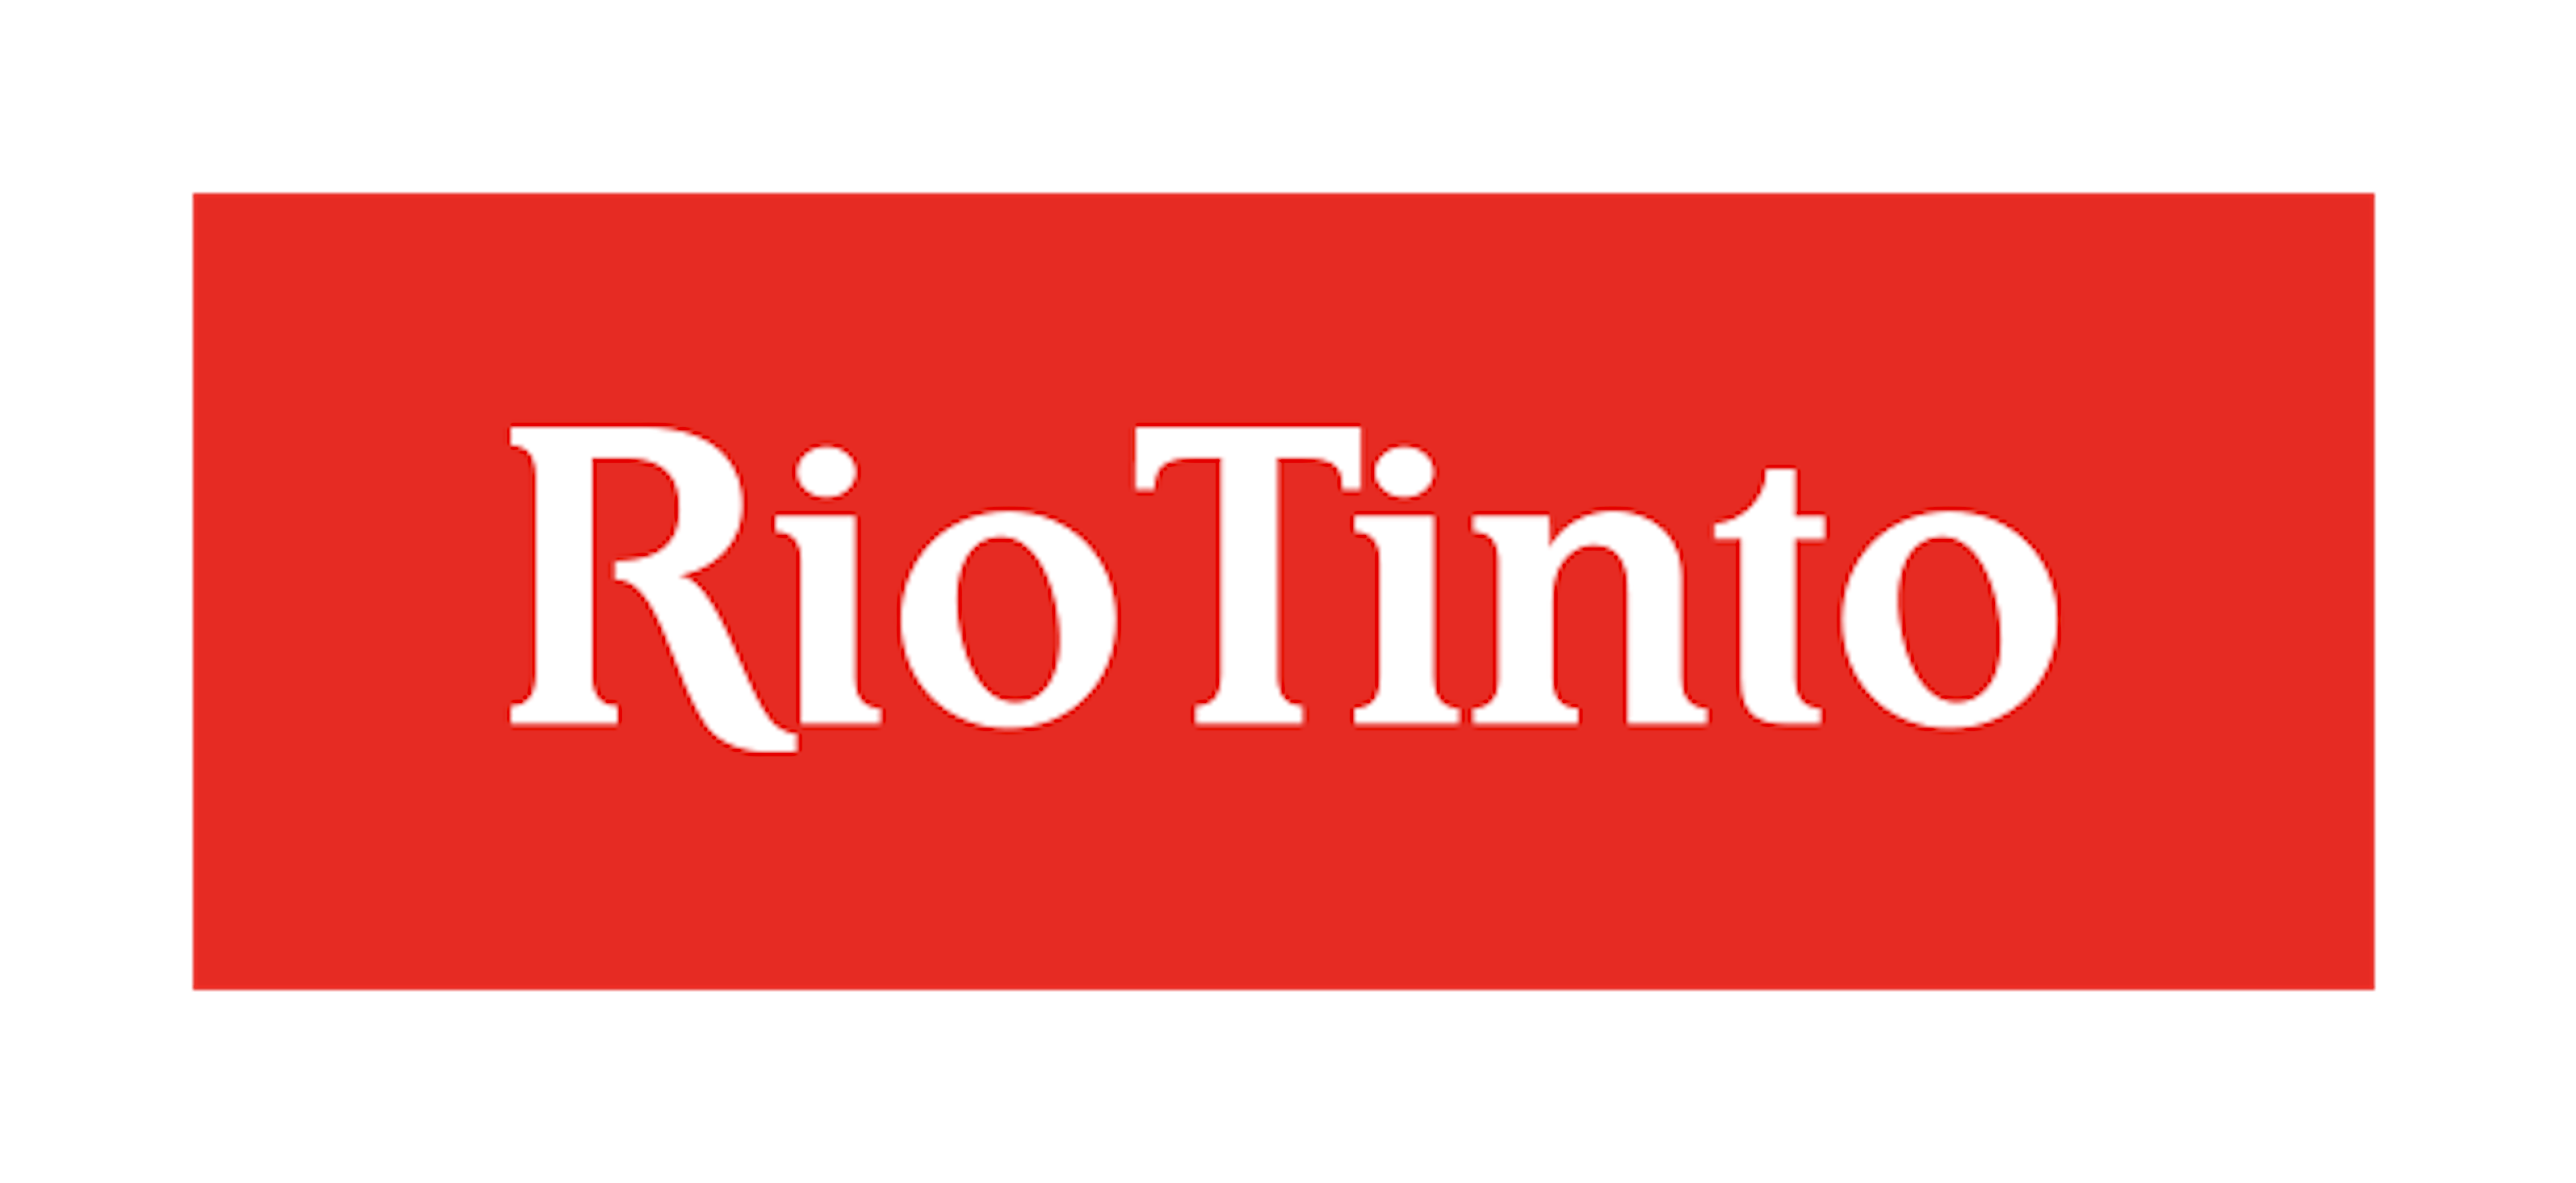 Logo de Rio Tinto